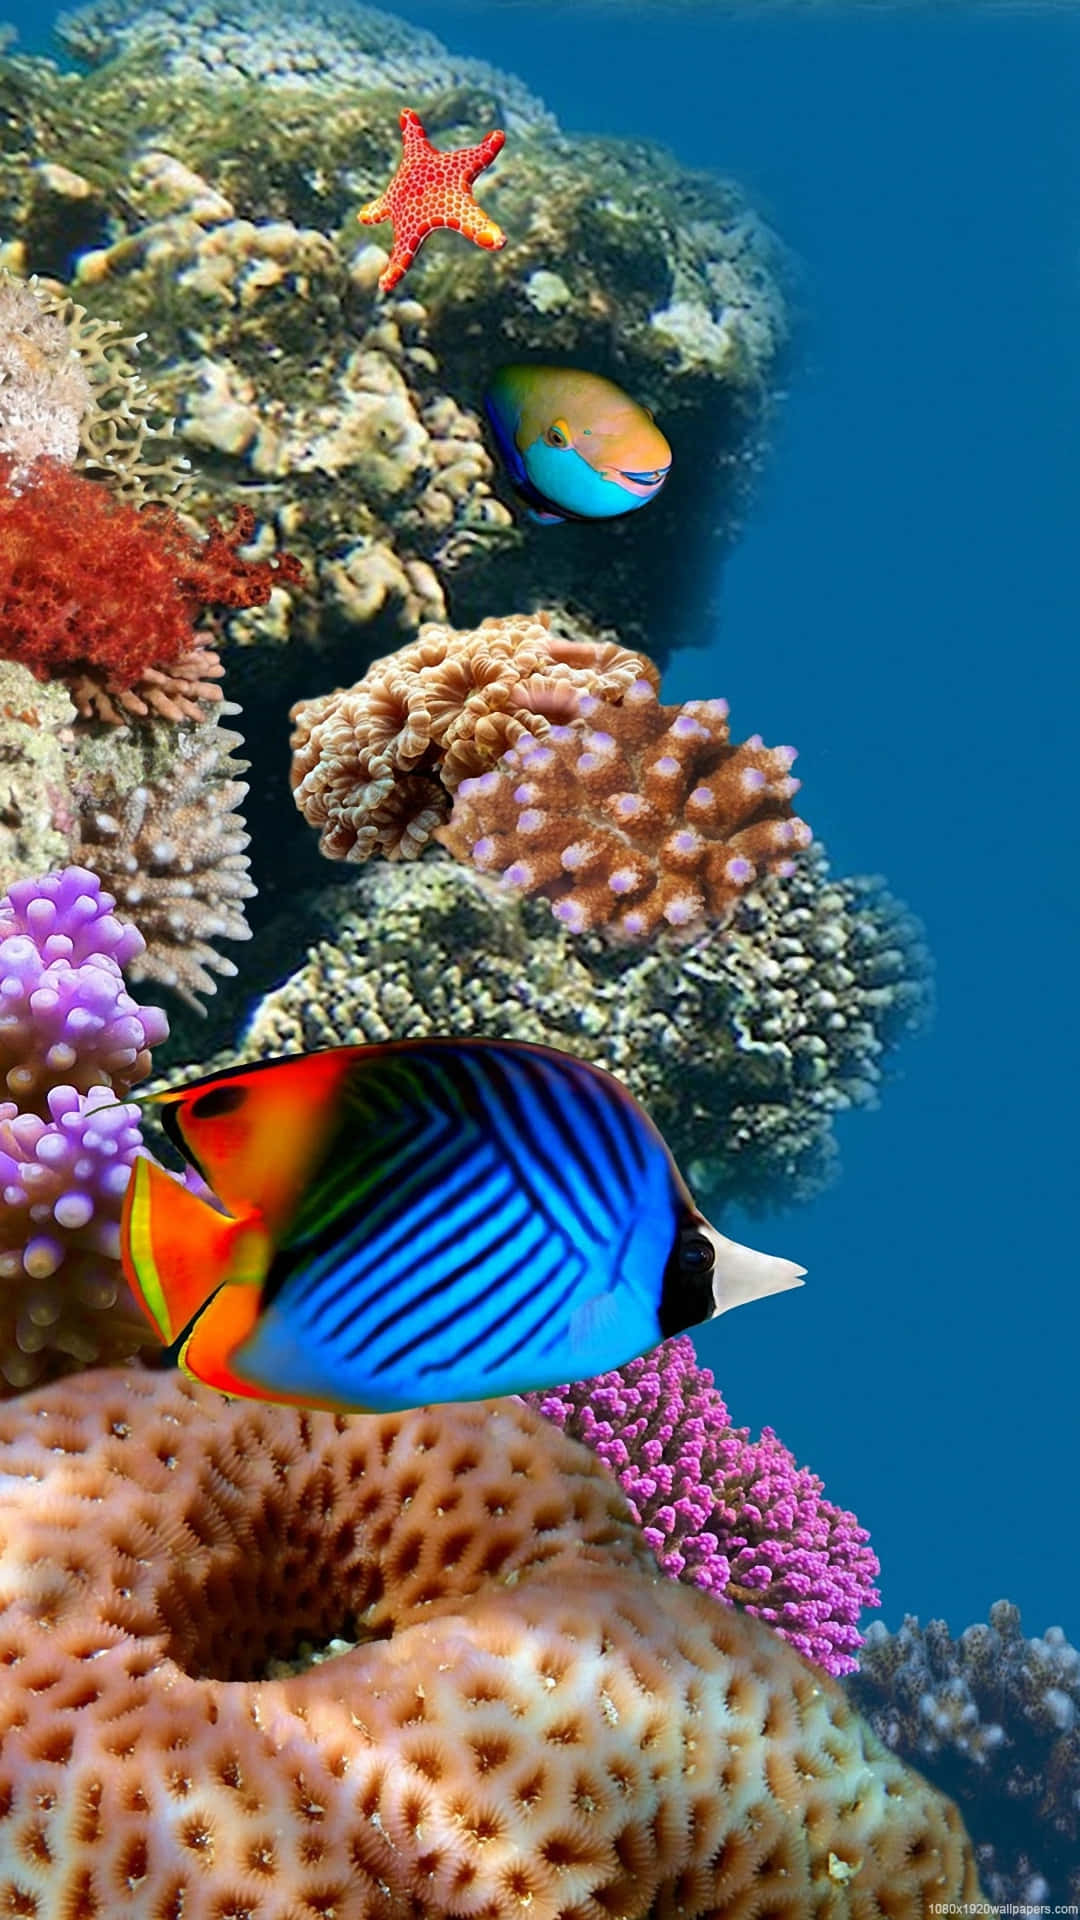 Nyd smukke, beroligende udsigter på din iPhone med Aquarium-appen! Wallpaper